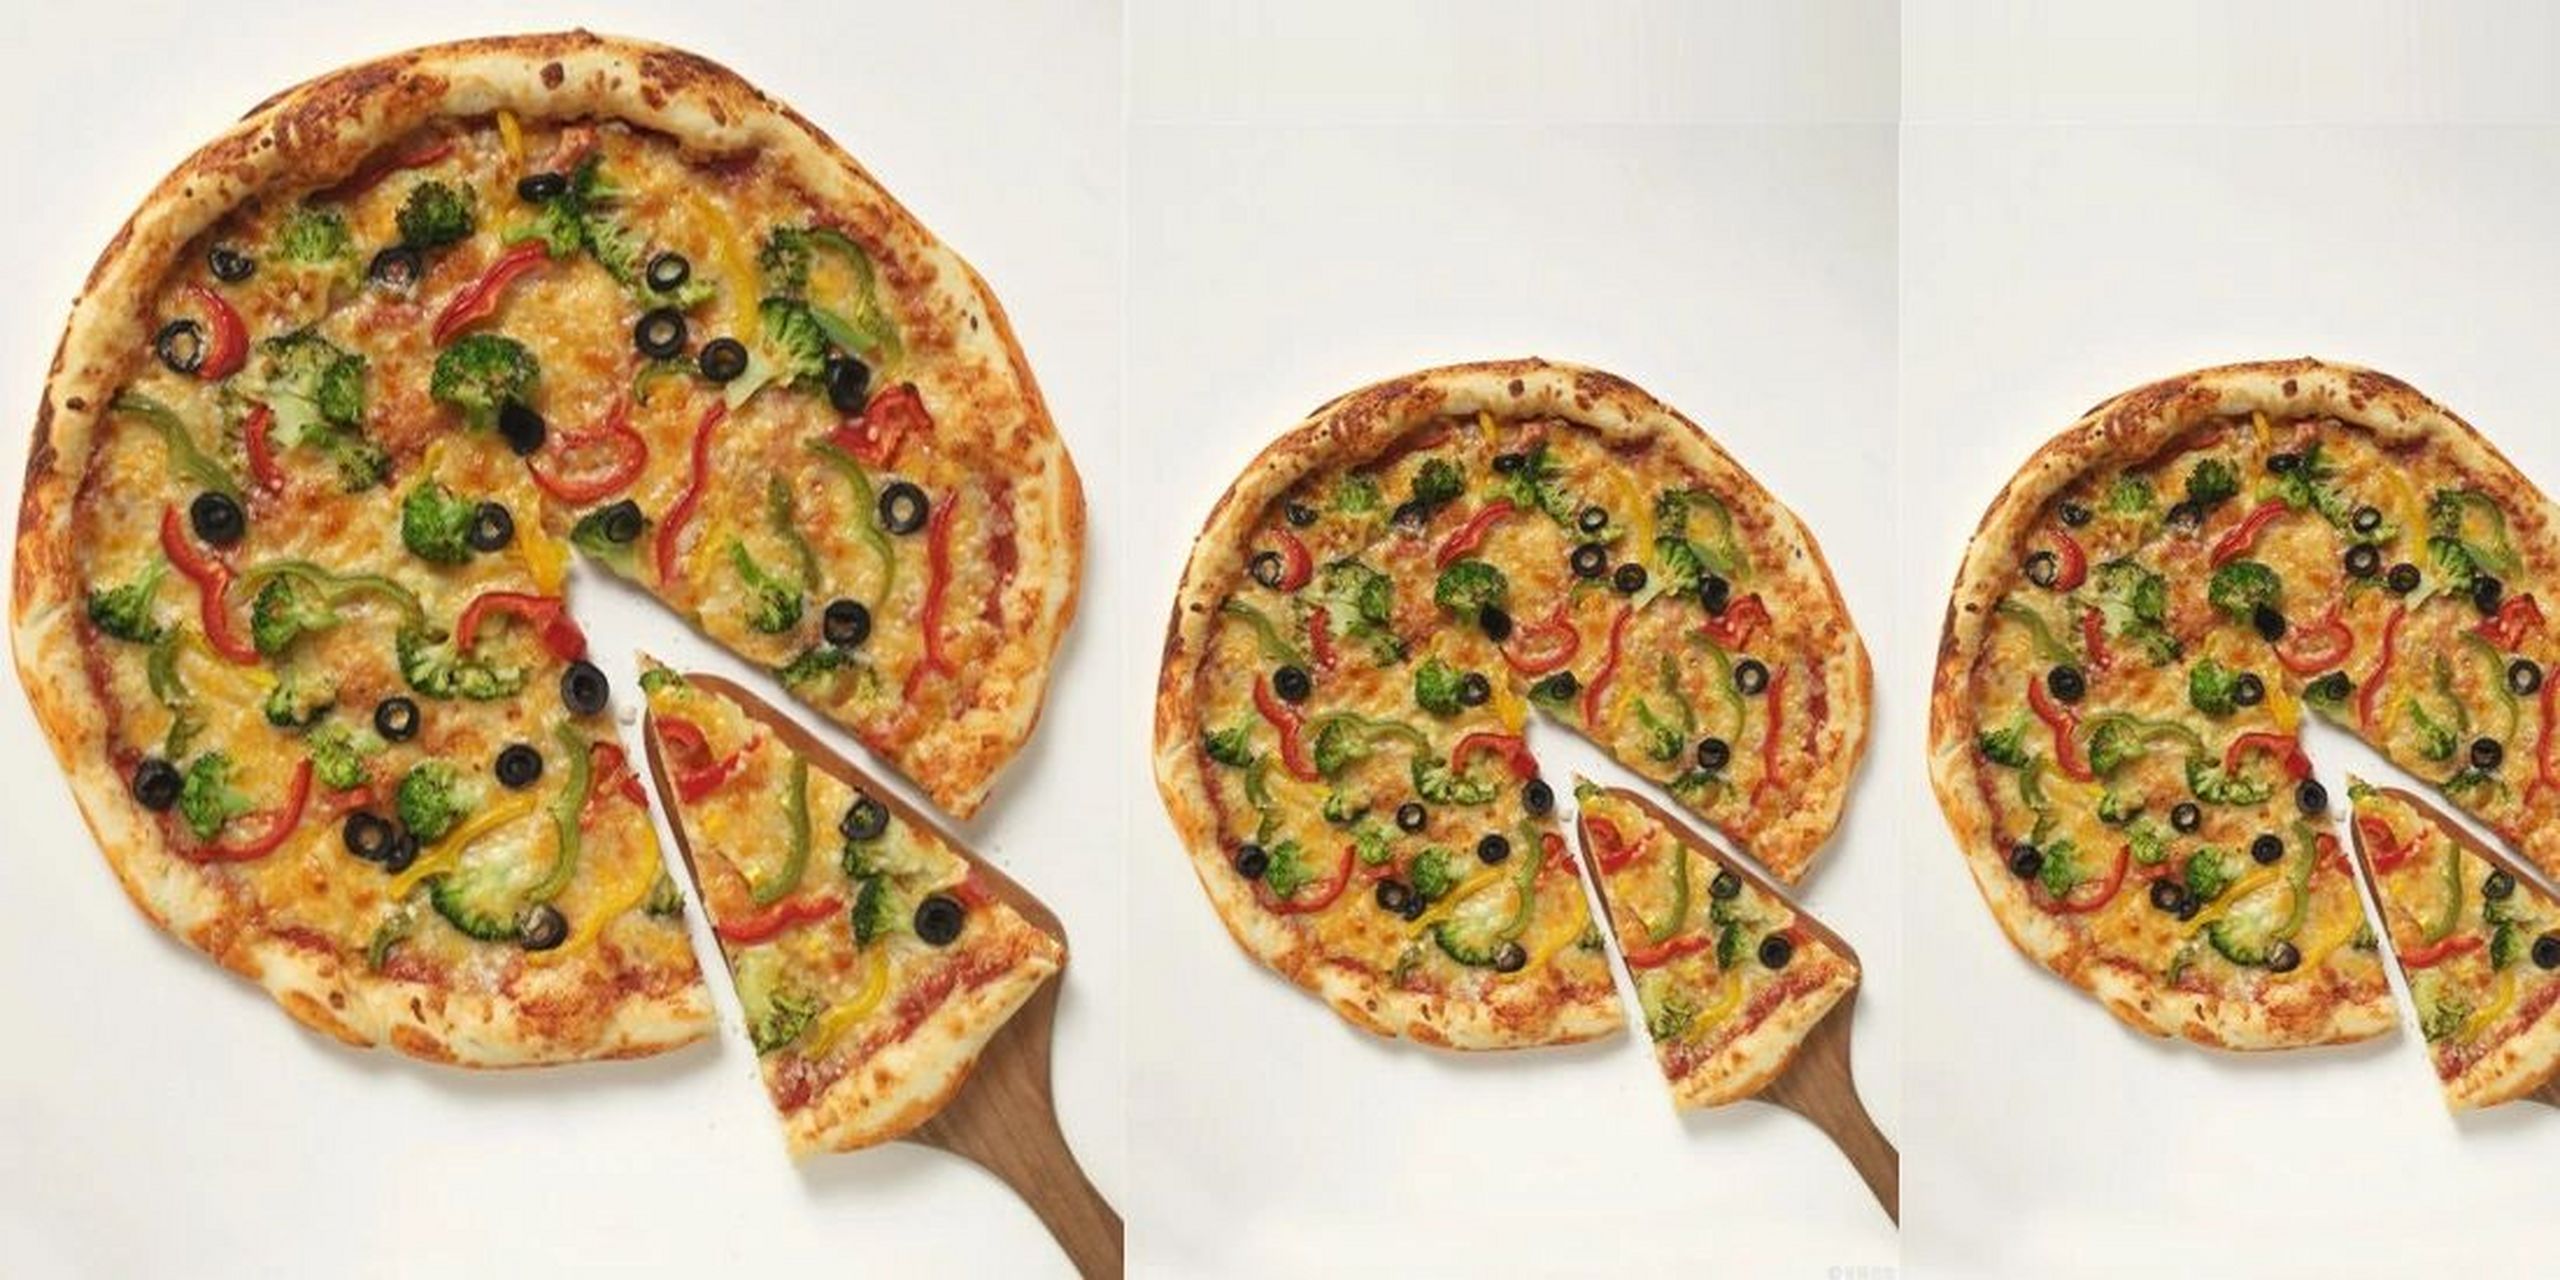 假设9英寸披萨与6英寸披萨厚度一样,那么我们只需要比较披萨的没